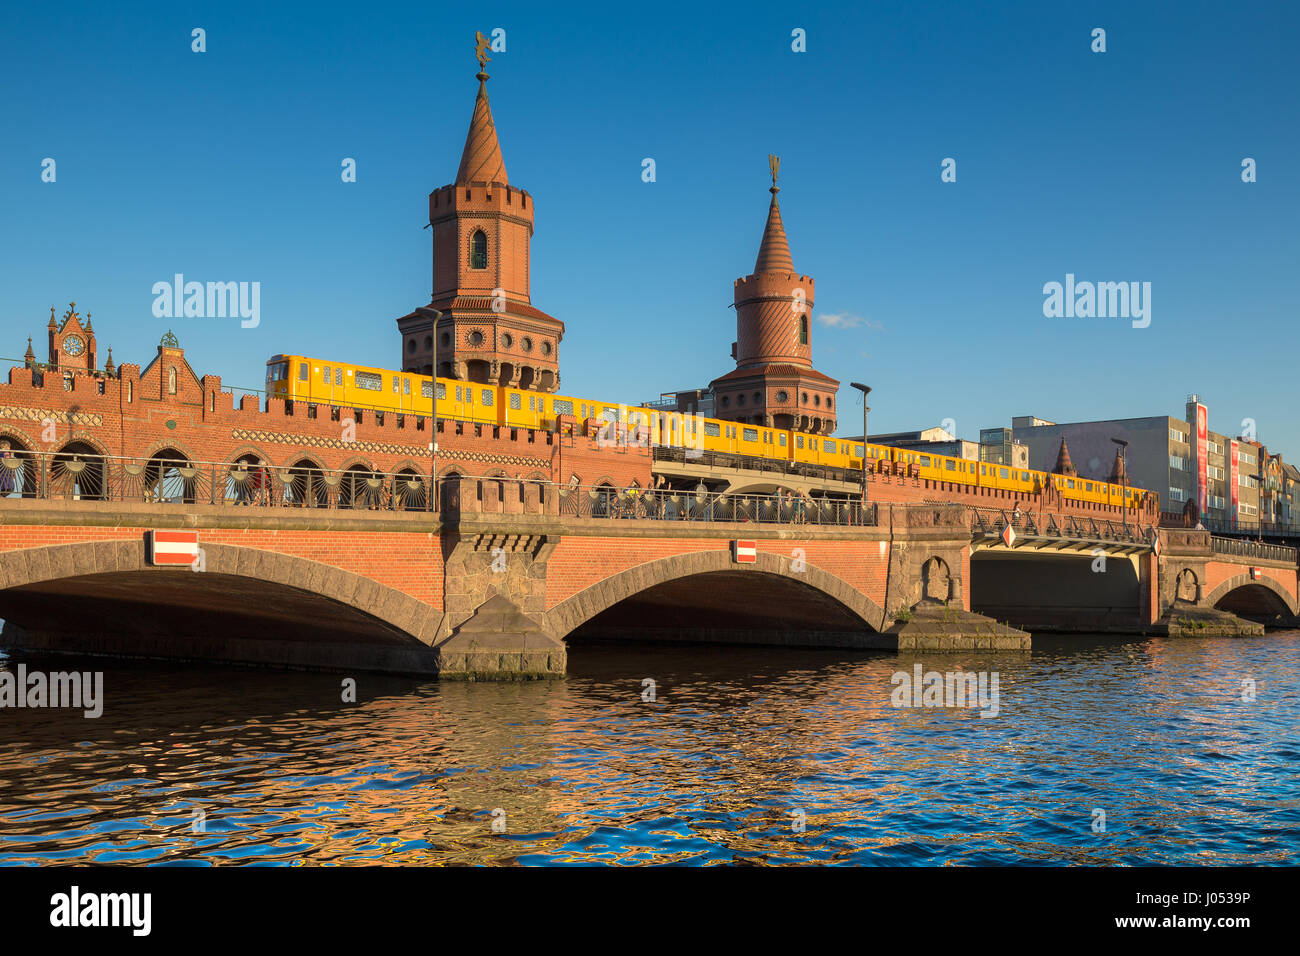 Klassische Panorama des berühmten Oberbaumbrücke mit historischen Berliner U-Bahn Überquerung der Spree an einem schönen sonnigen Tag mit blauem Himmel, Berlin Stockfoto